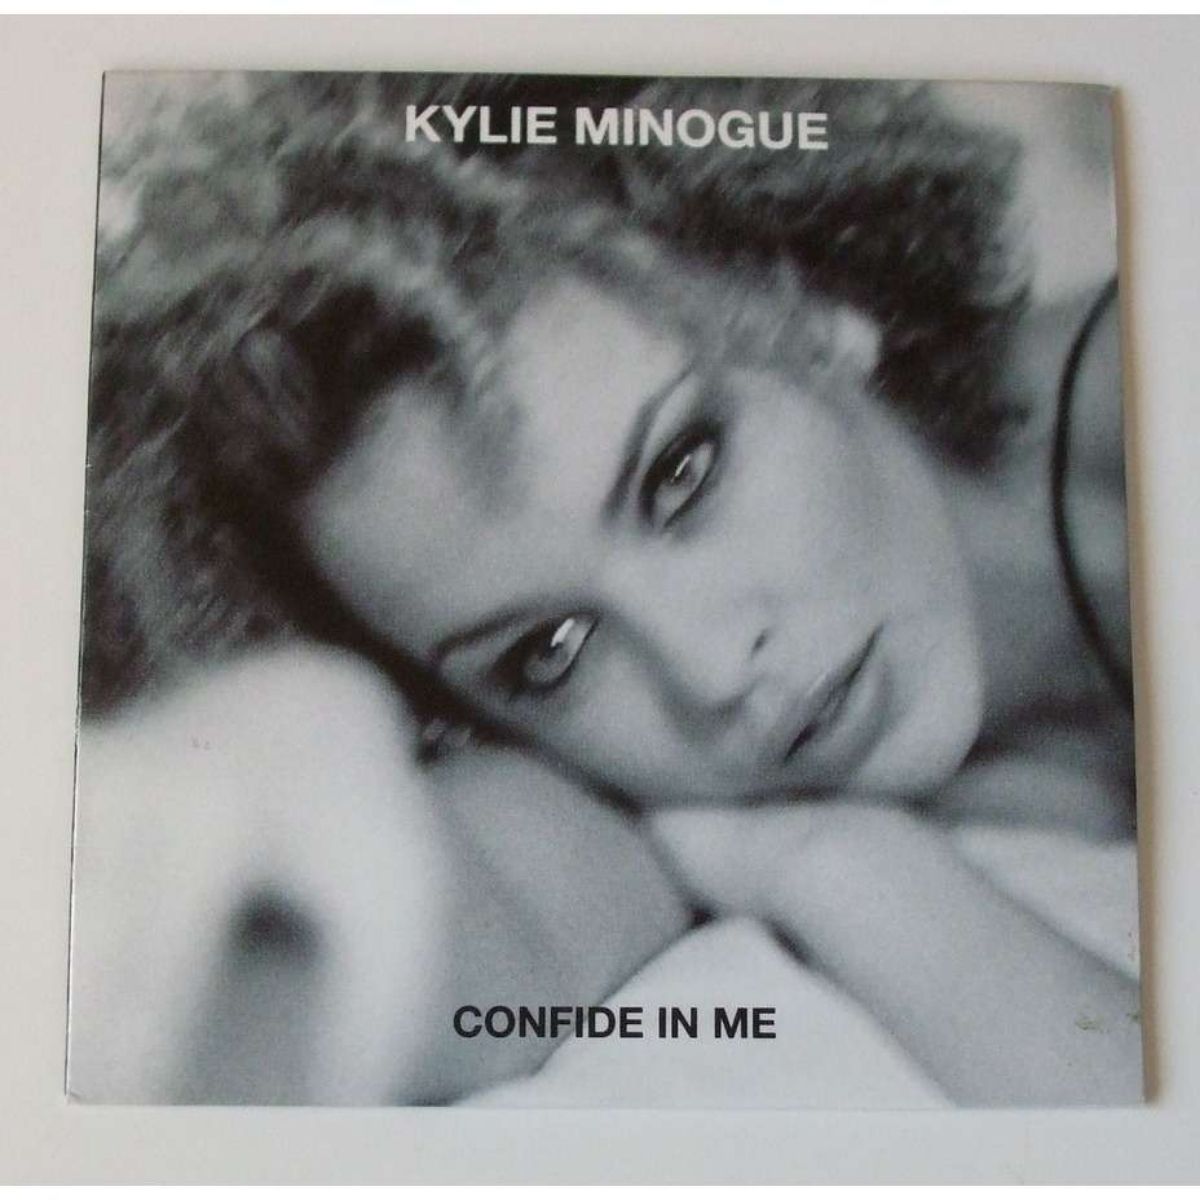 Couverture de l'album "Confide In Me" de Kylie Minogue